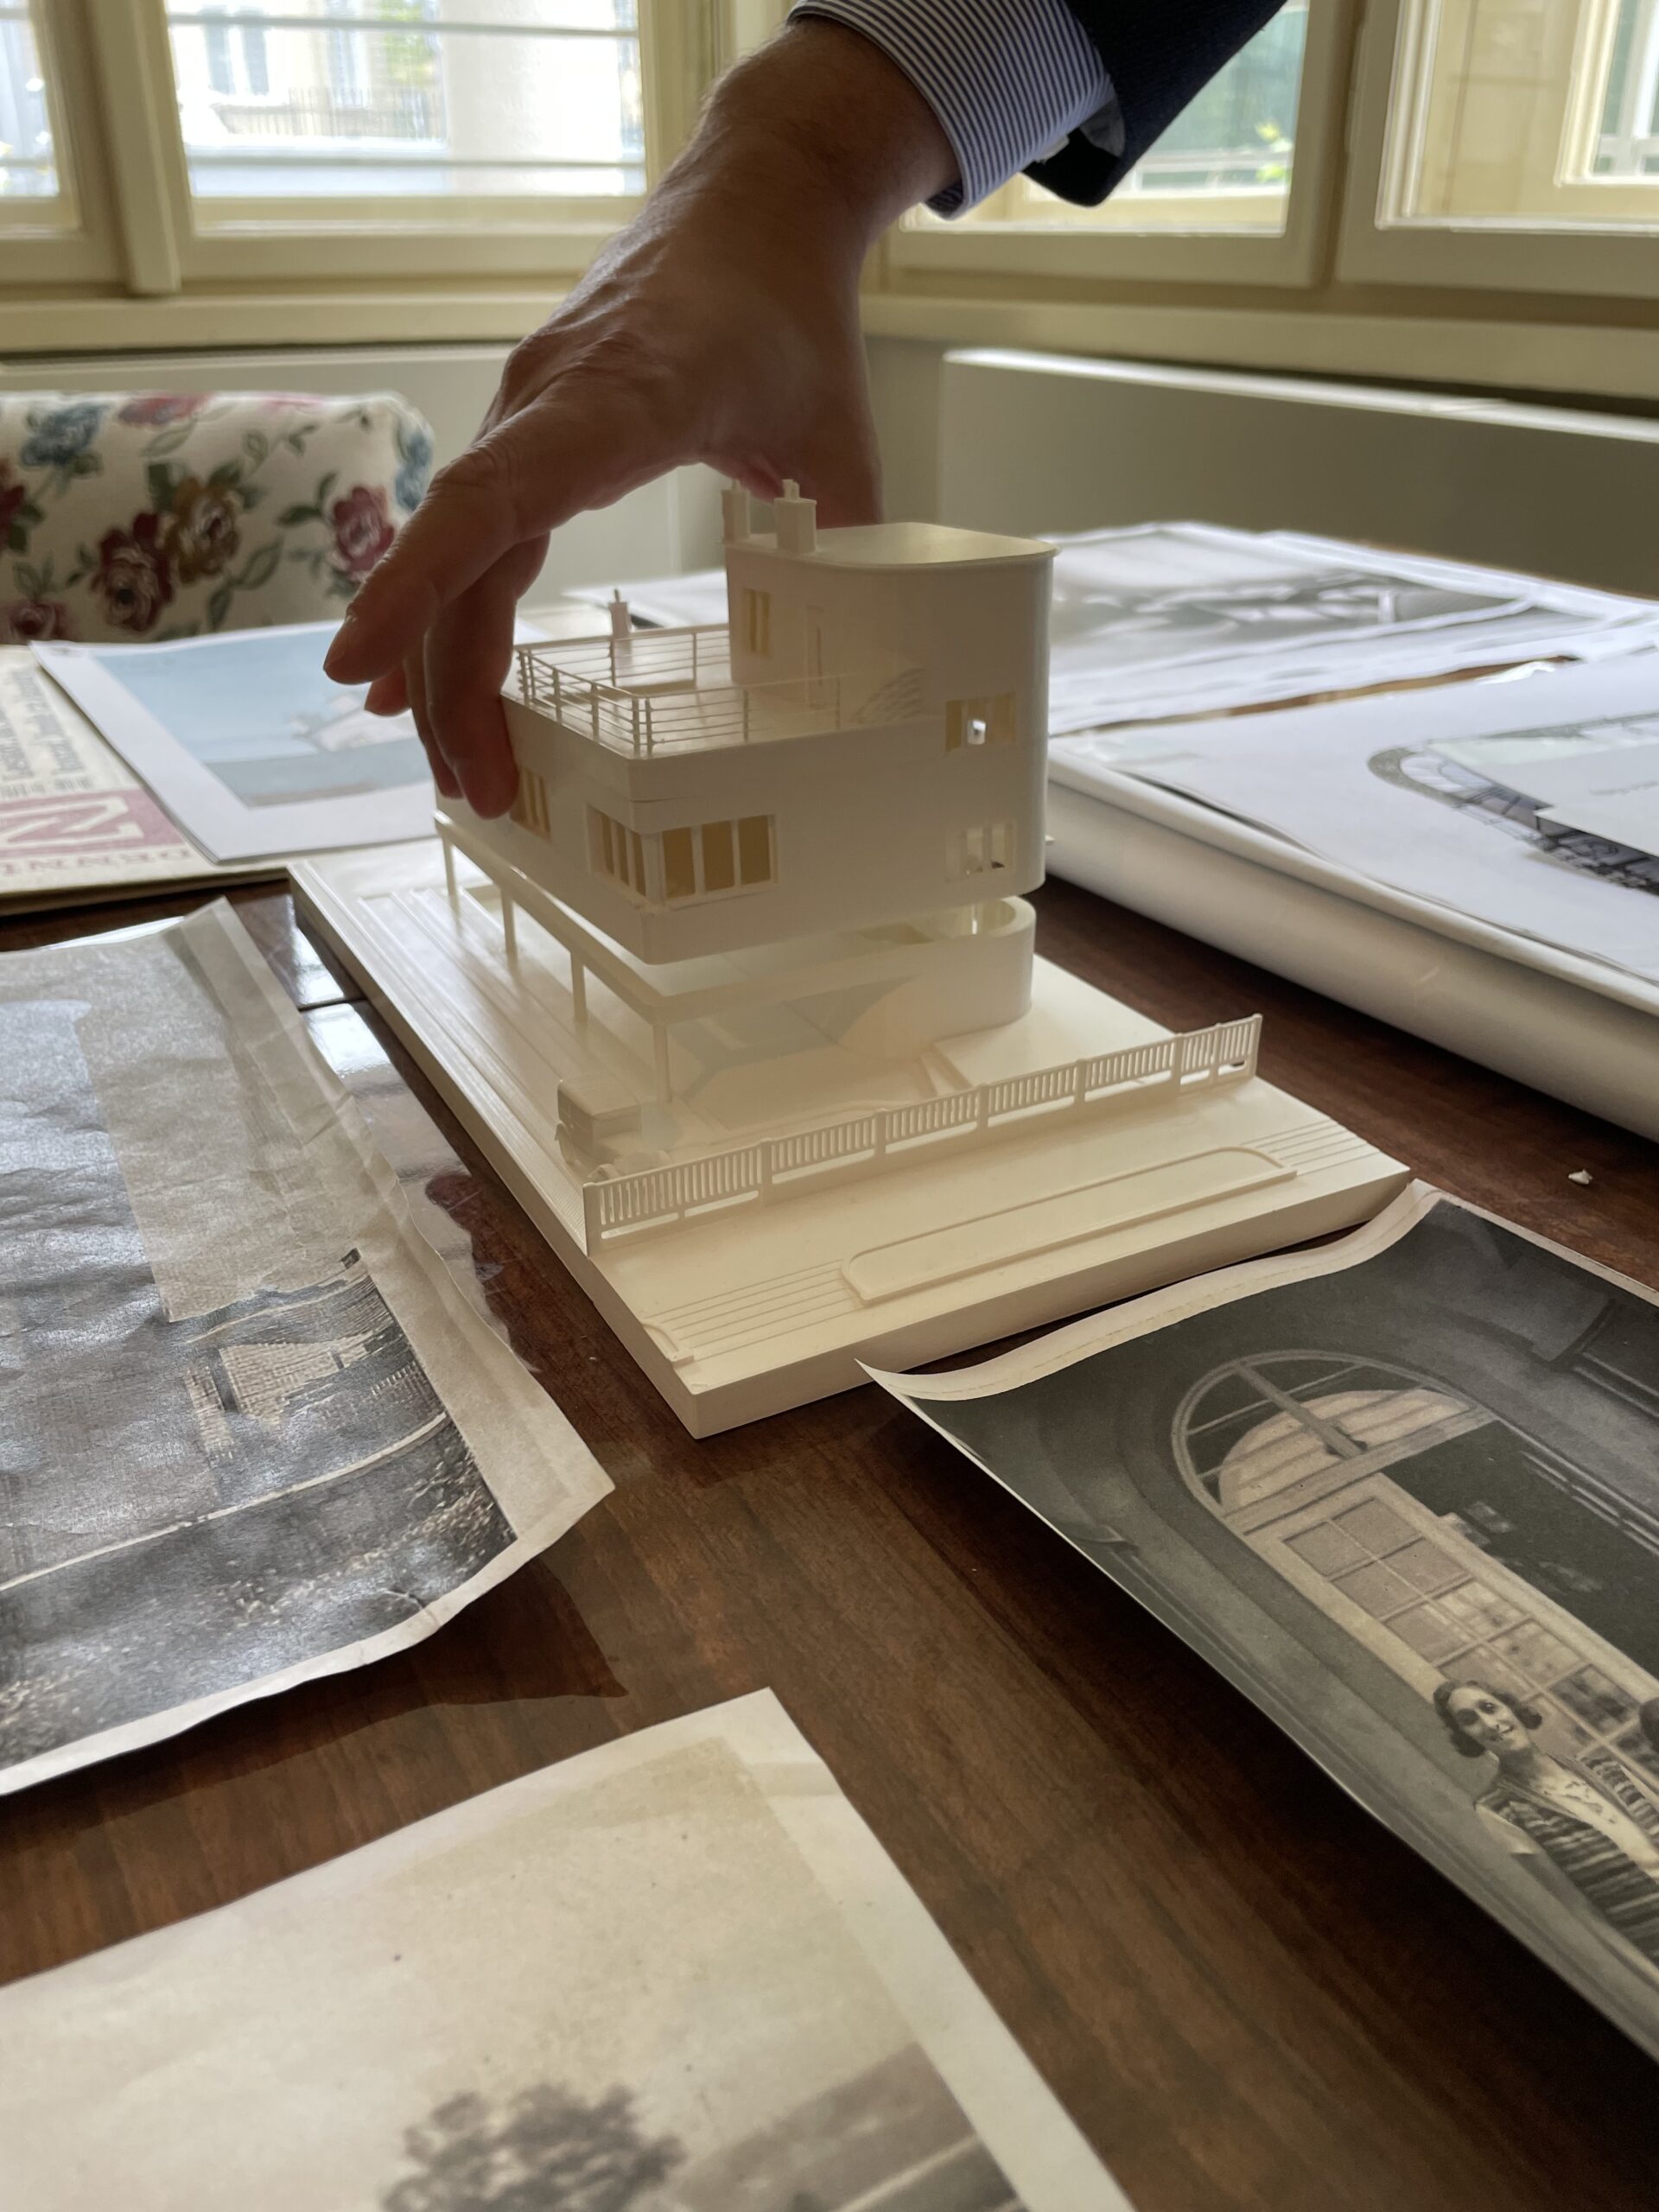 En modell av en funksjonalistisk villa står på et bord omringet foto og avisutklipp.